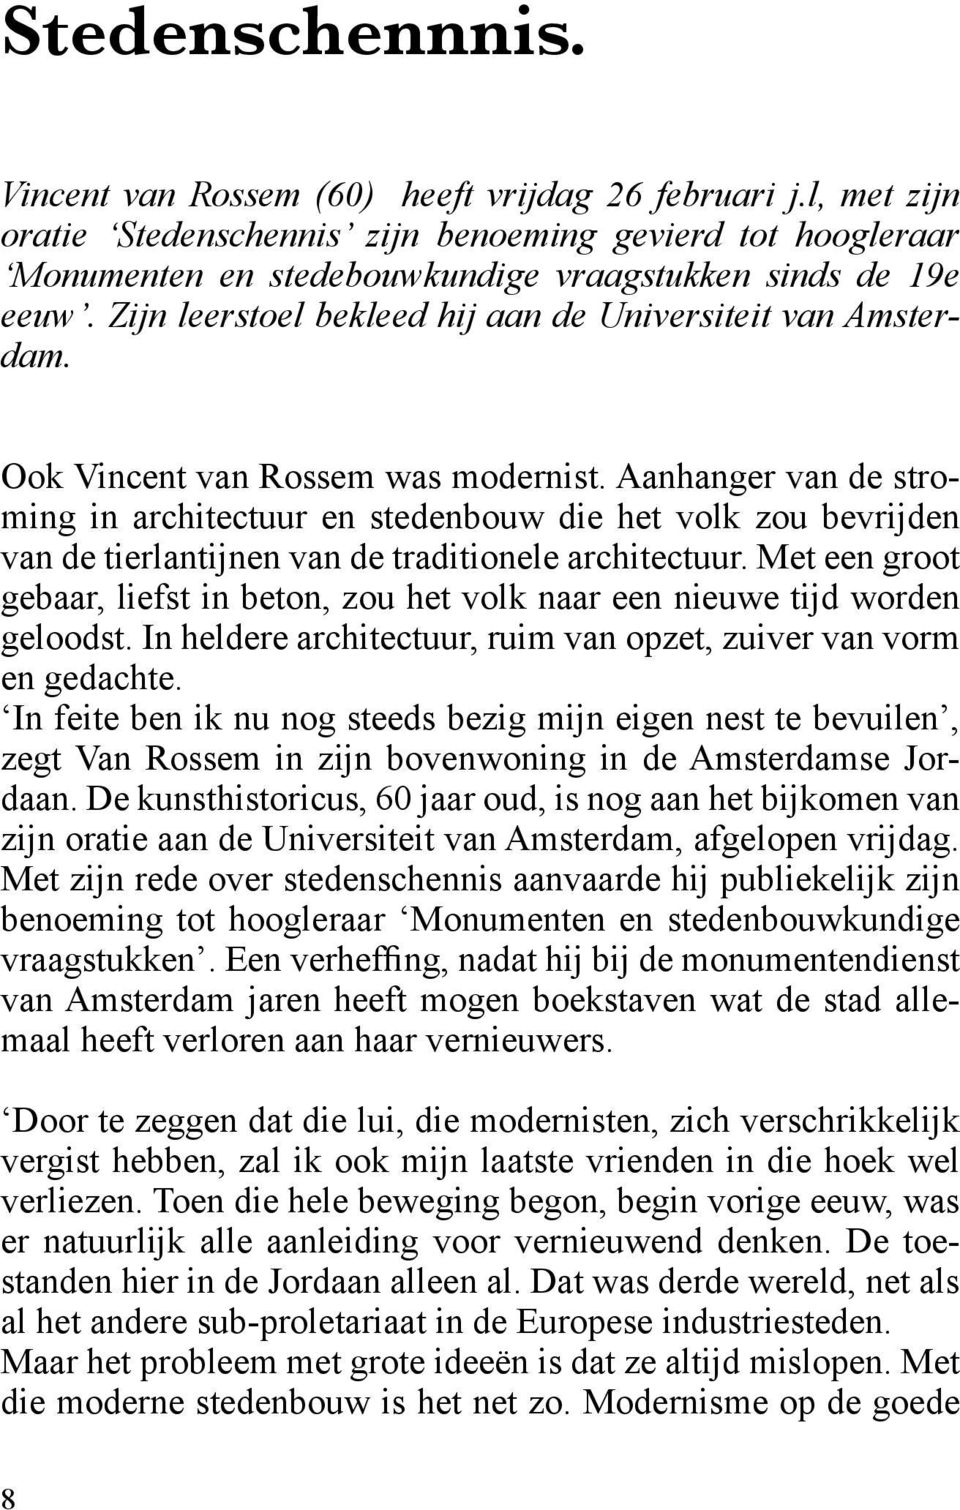 Ook Vincent van Rossem was modernist. Aanhanger van de stroming in architectuur en stedenbouw die het volk zou bevrijden van de tierlantijnen van de traditionele architectuur.